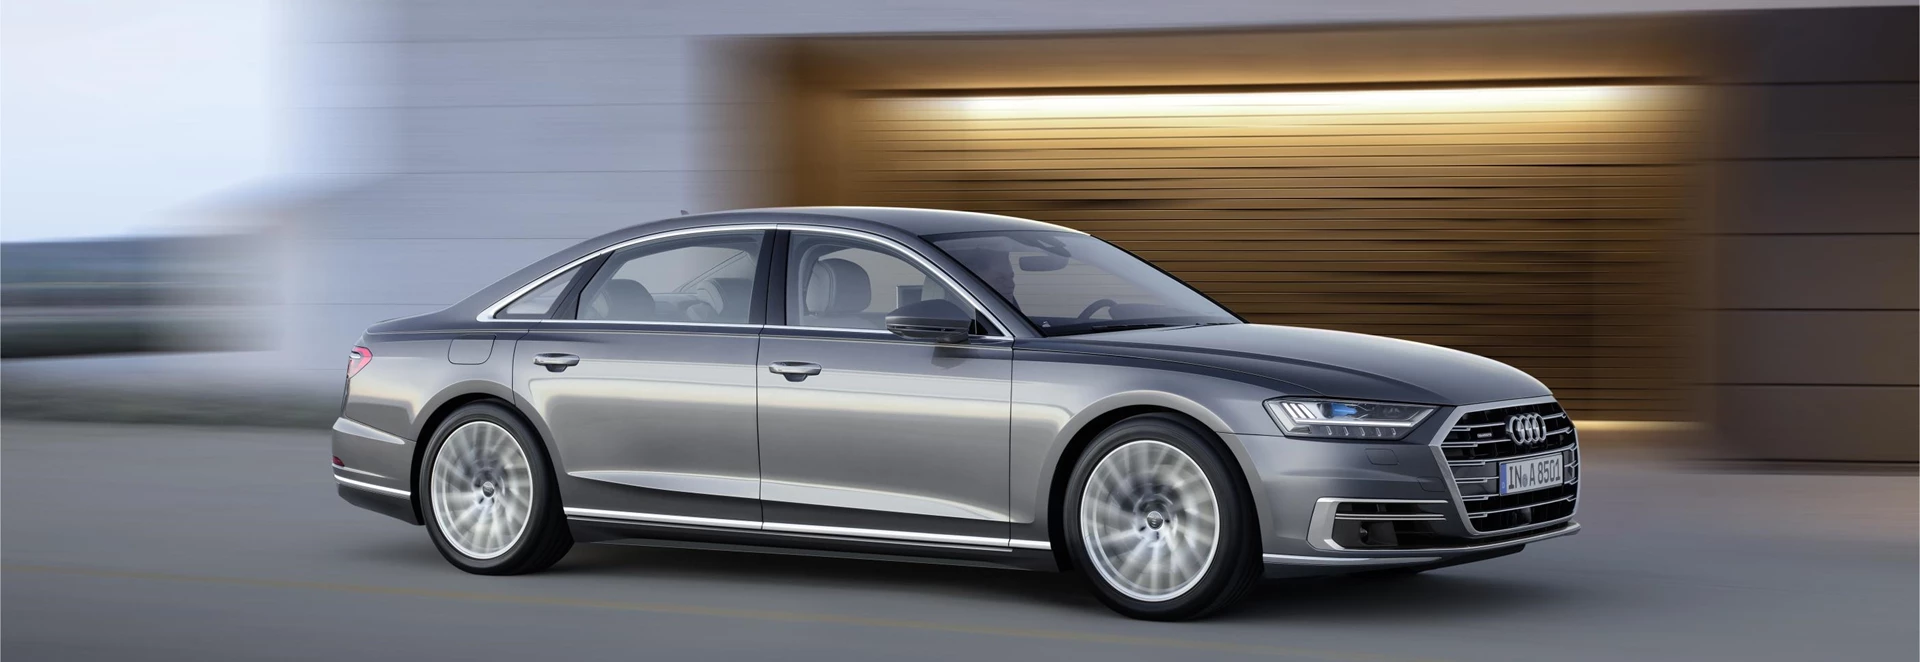 New Audi A8 saloon features autonomous tech 